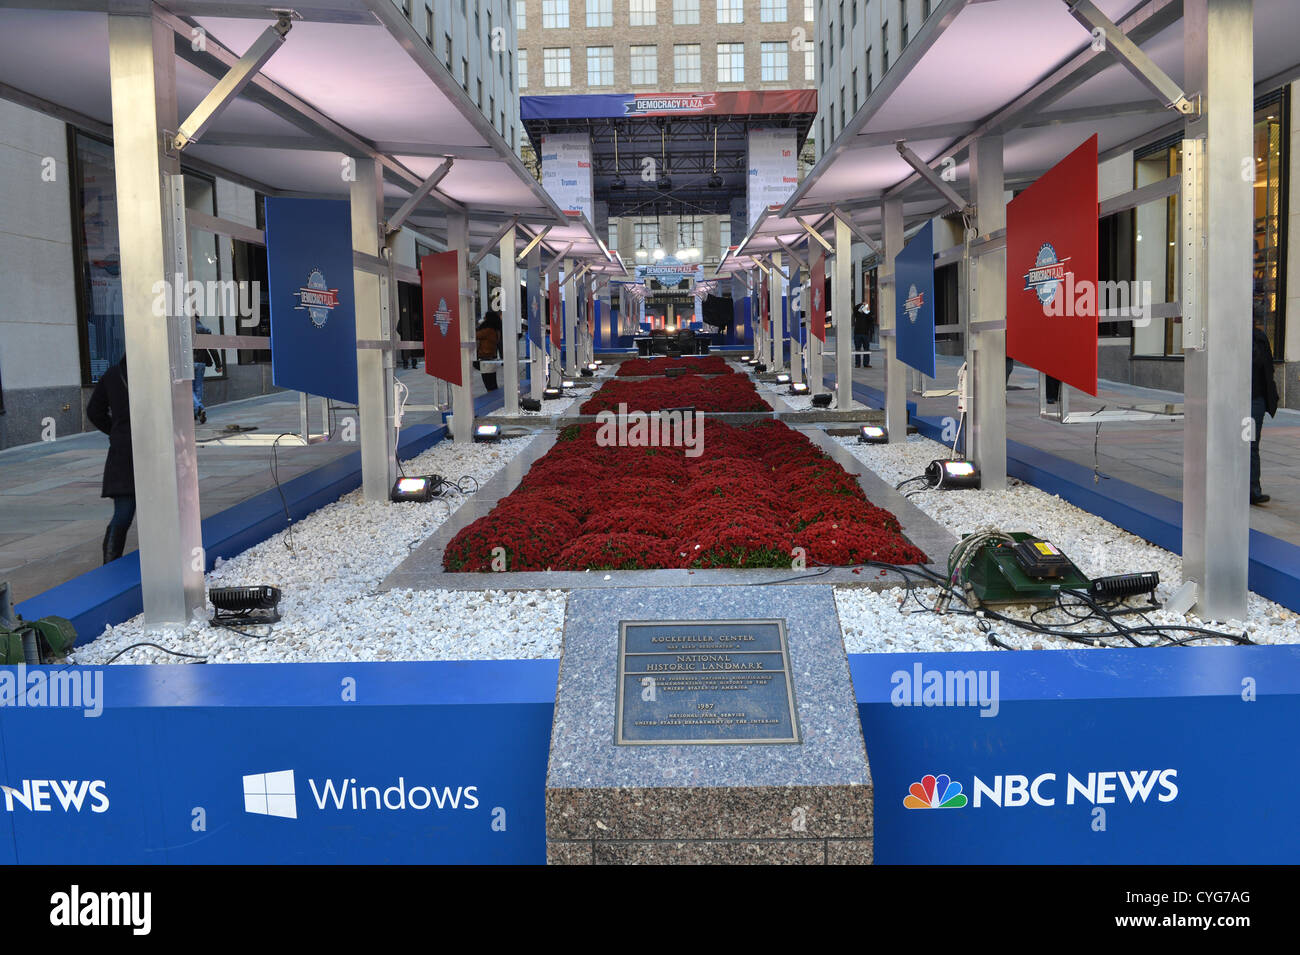 NEW YORK - NOV 04 - NBC News verwandeln das Rockefeller Center in Demokratie Plaza, eine interaktive und innovative Erfahrung feiert amerikanischen Demokratie in New York City am 4. November 2012 Stockfoto